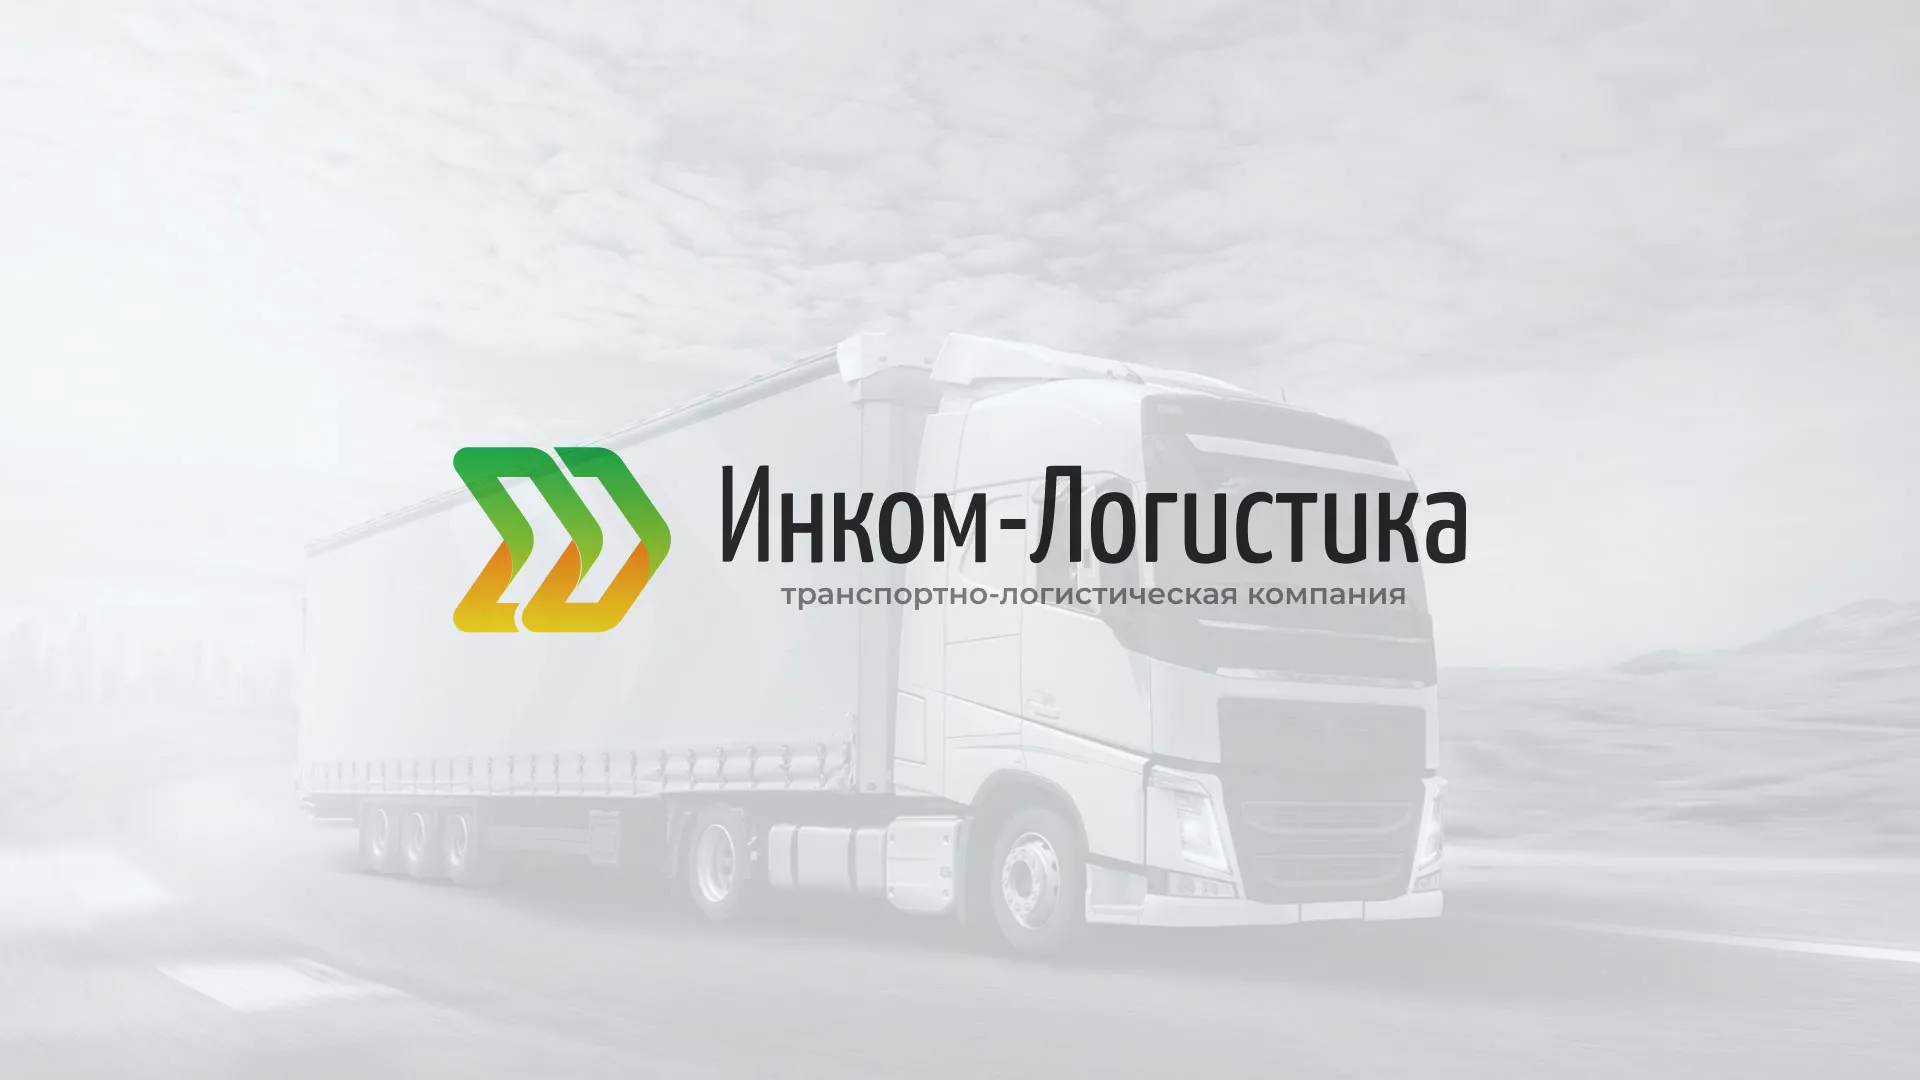 Разработка логотипа и сайта компании «Инком-Логистика» в Медвежьегорске